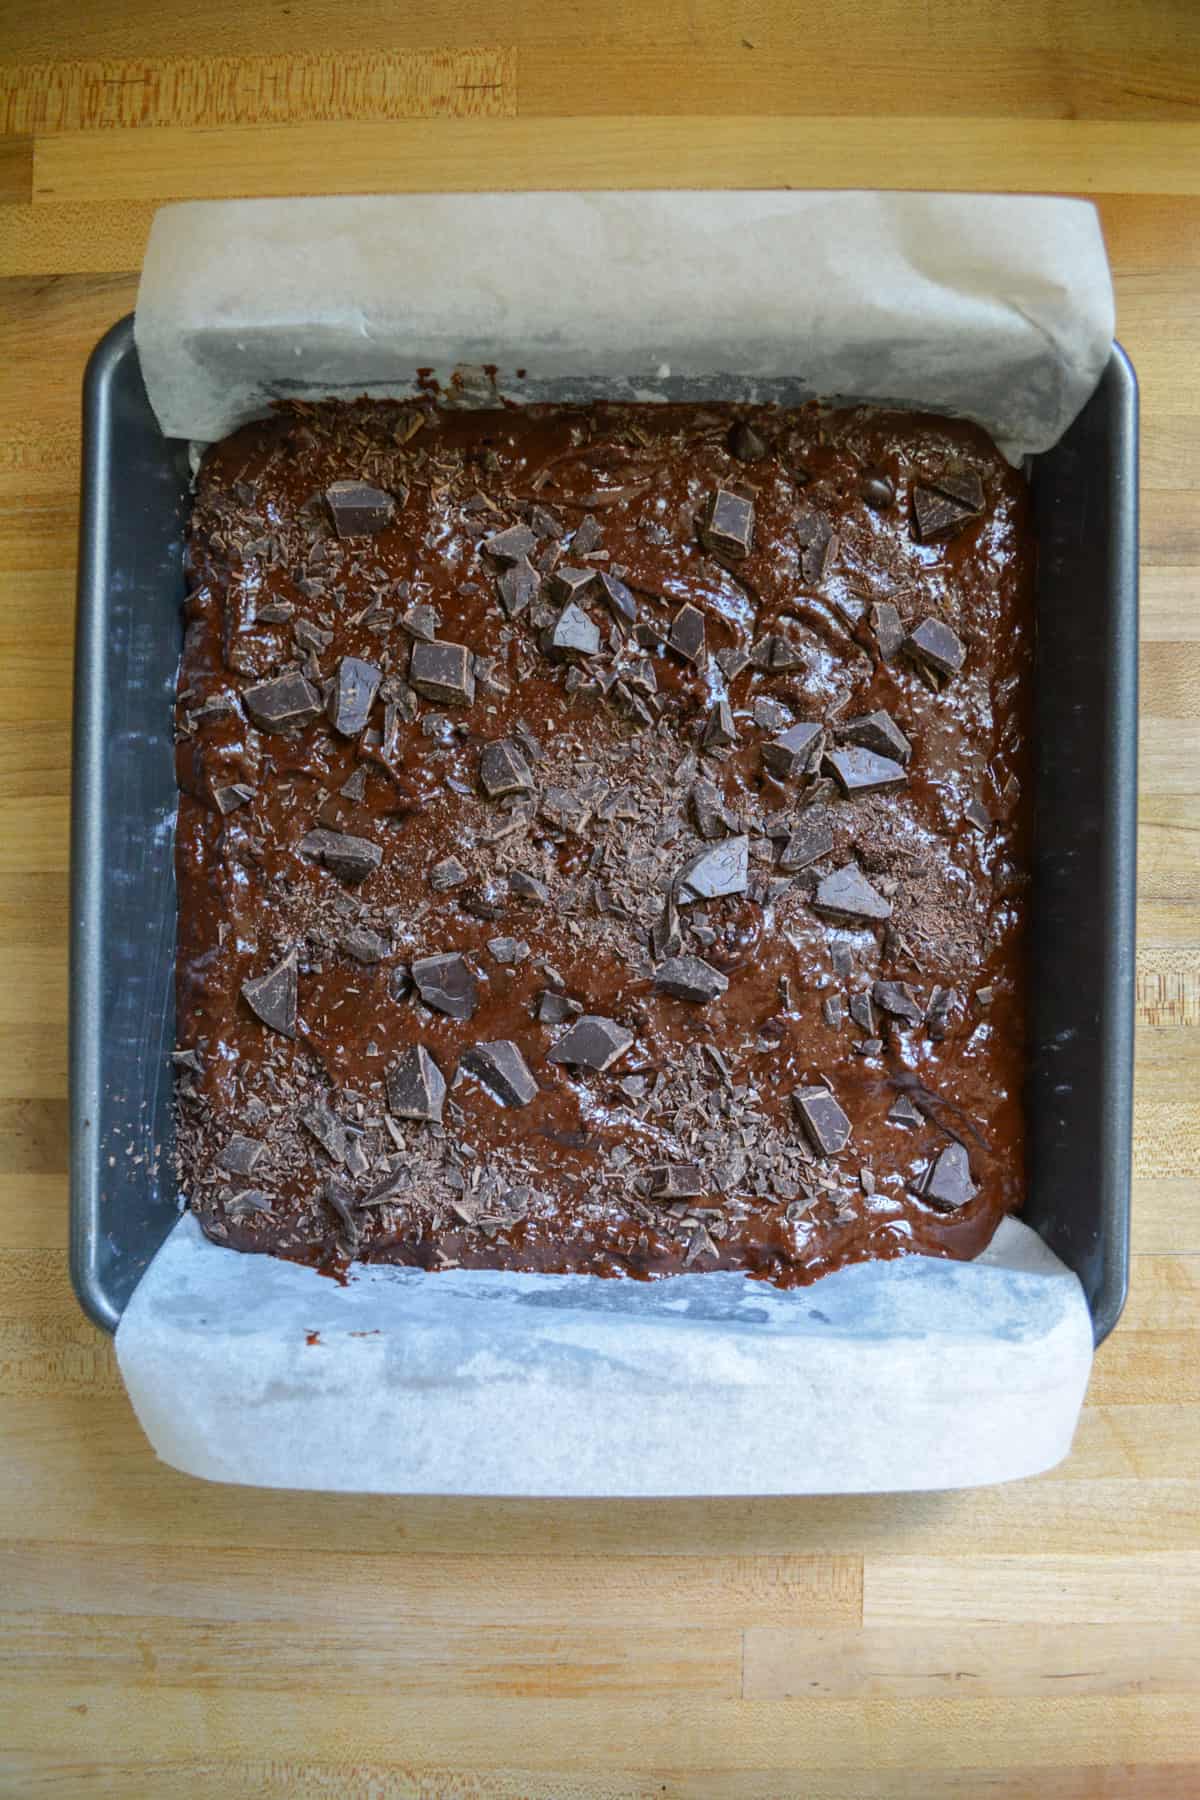 Brownie batter in a prepared baking pan.